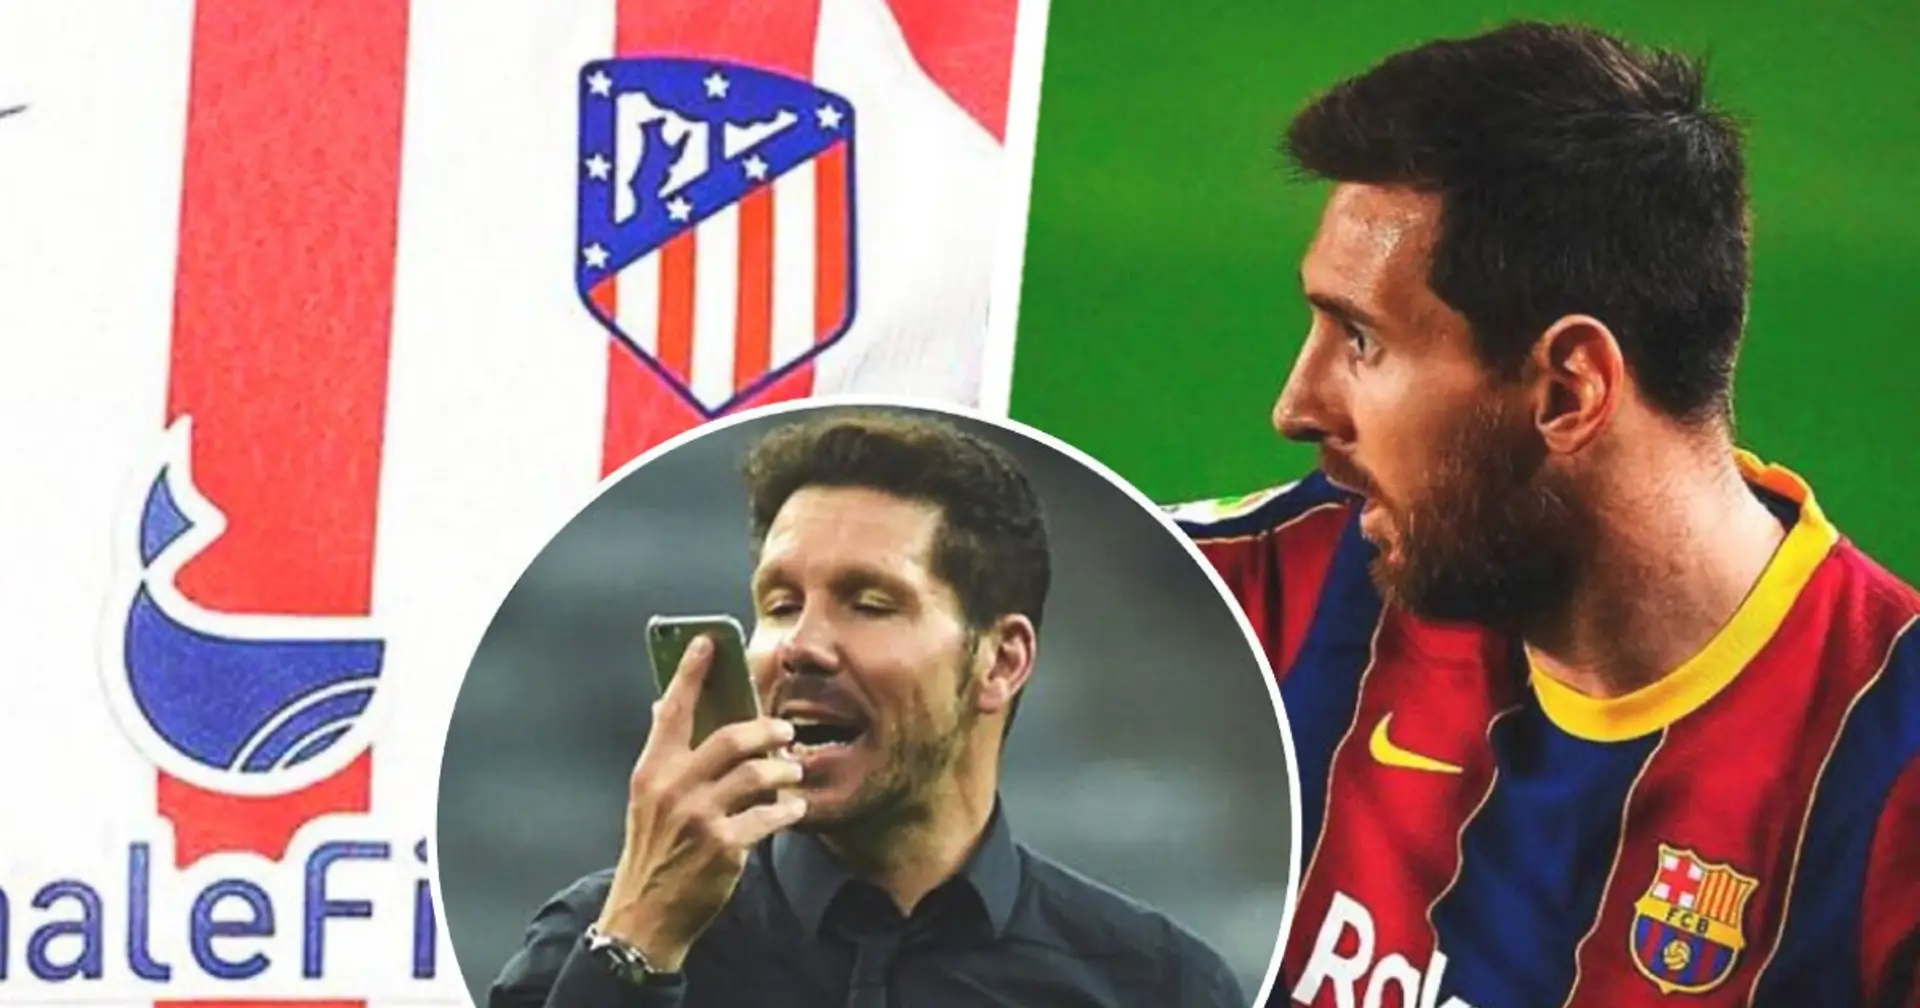 Wow! 2009 trug Leo Messi ein Trikot von Atletico Madrid und absolvierte sogar ein Spiel für die Rojiblancos